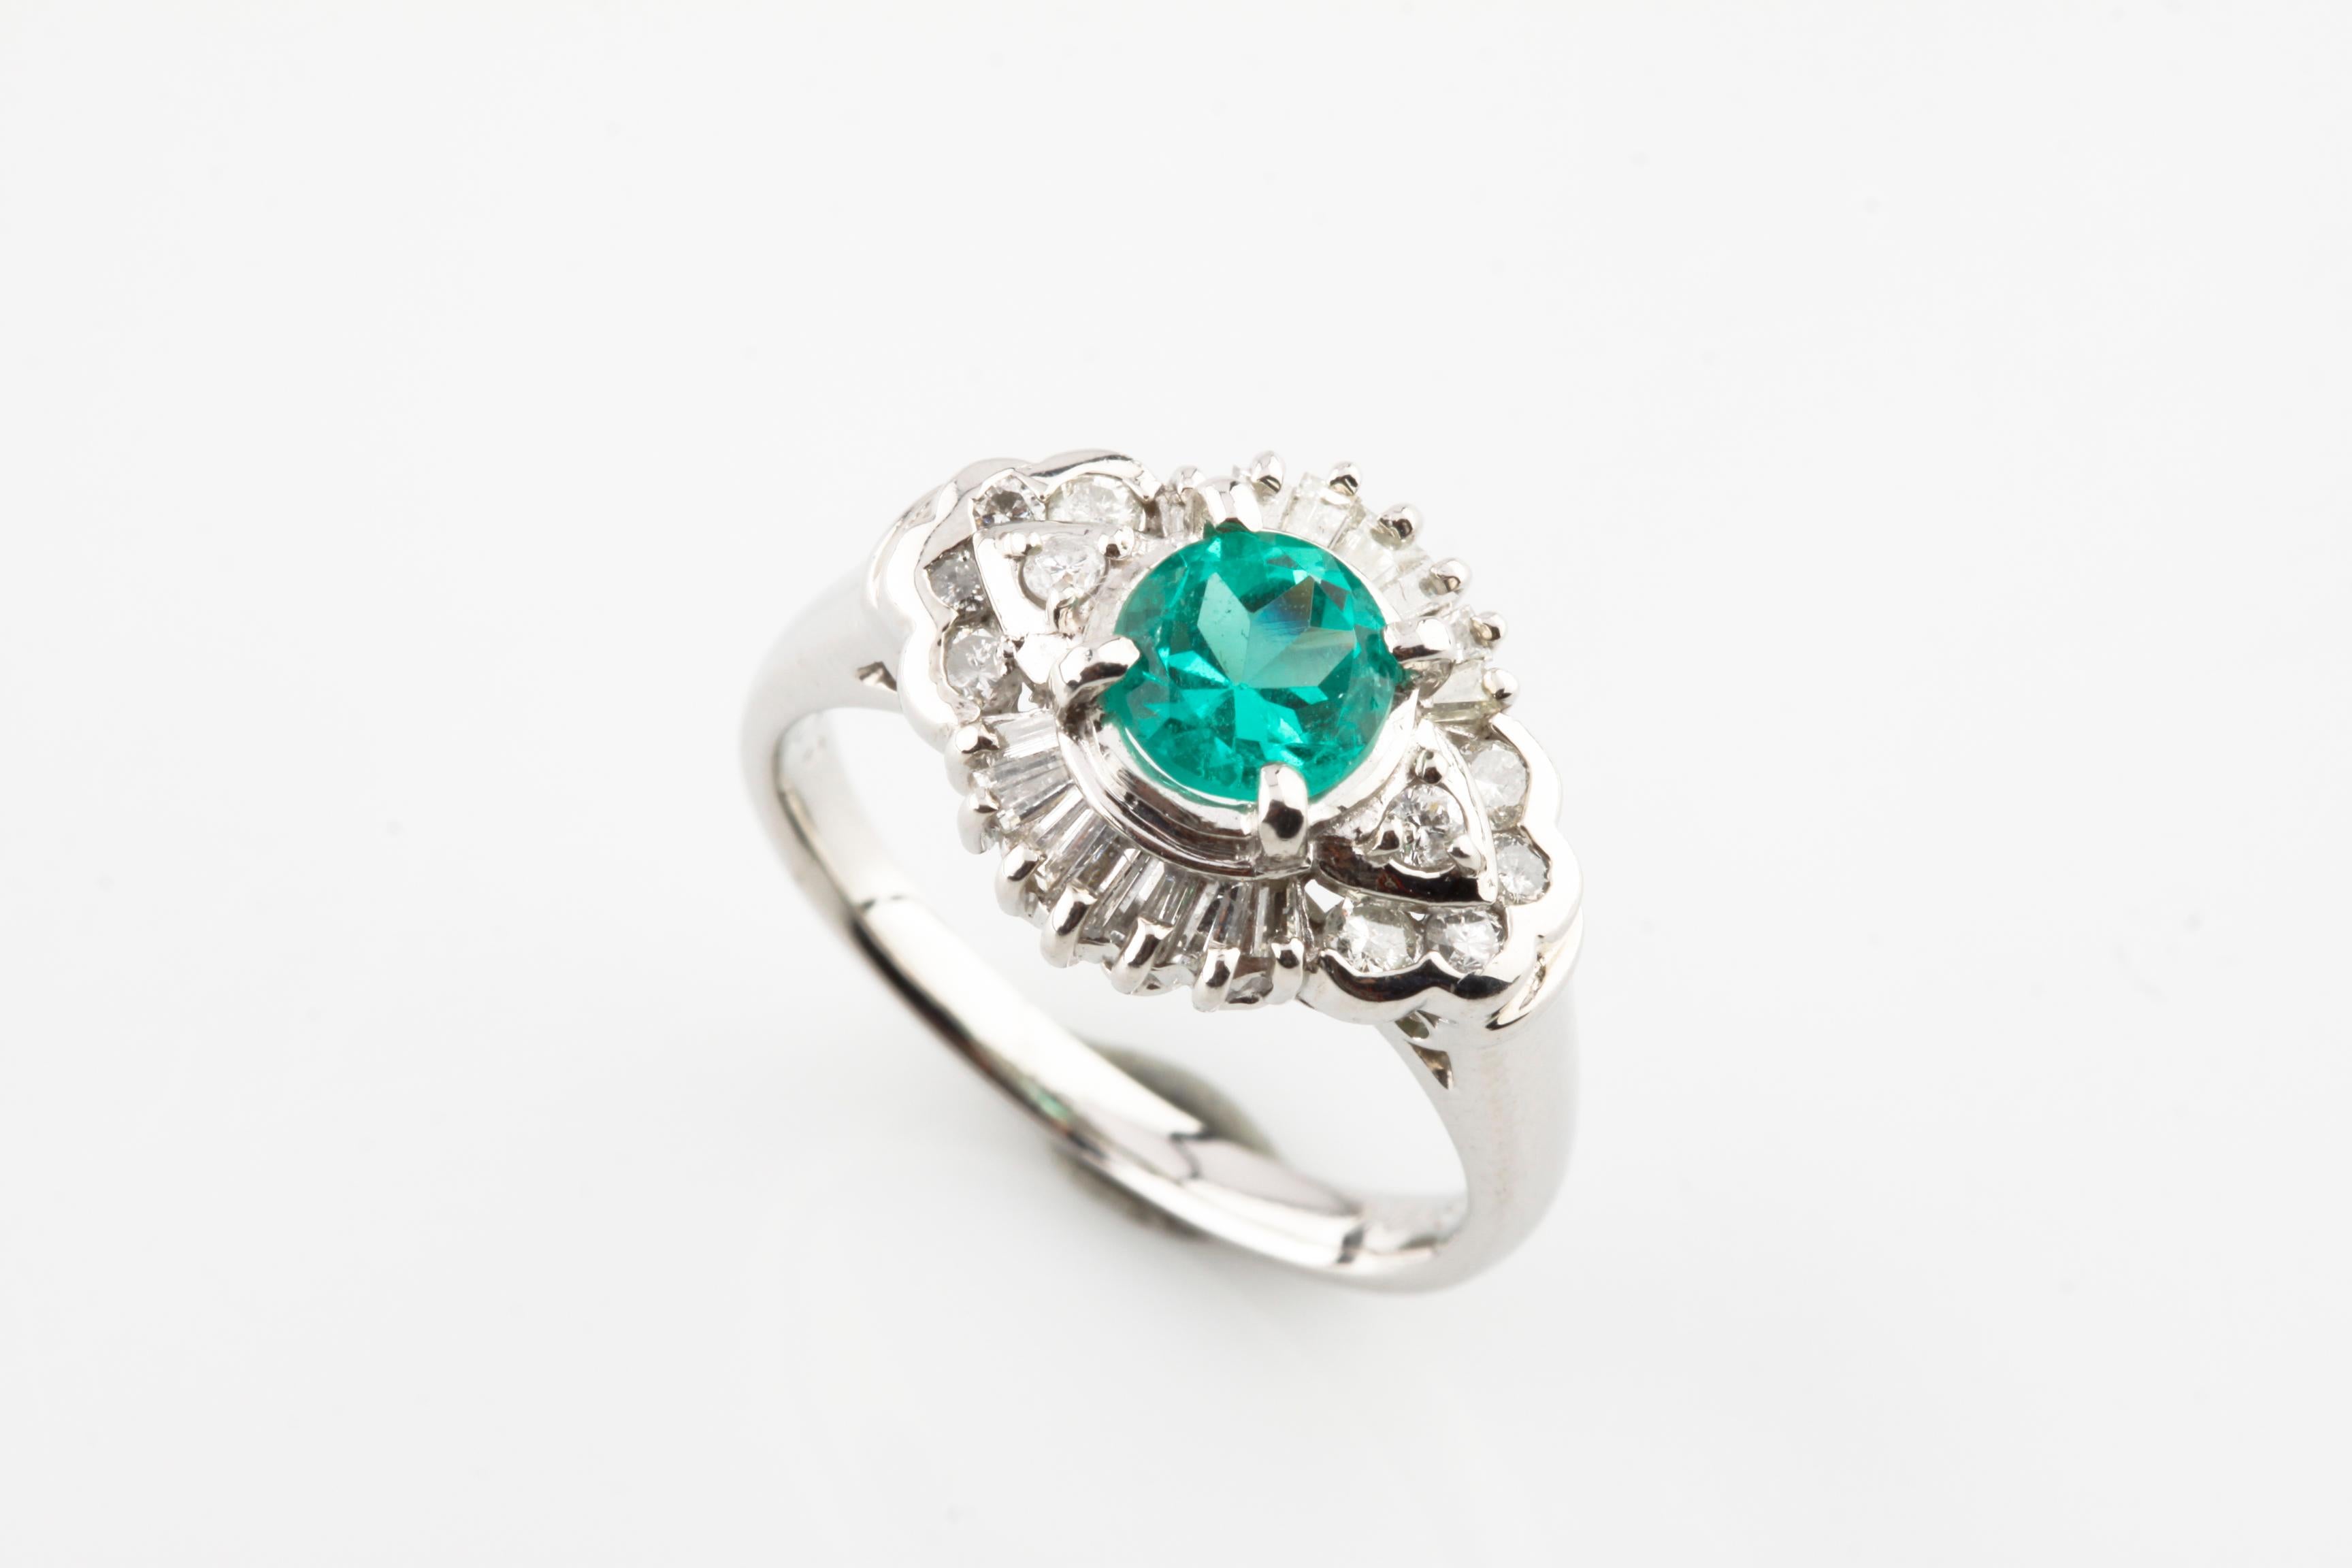 Wunderschöner Smaragd Solitär Ring
Eigenschaften 1.00 ct Rundschliff Smaragd
Runde und Baguette-Diamant-Akzente
Gesamtgewicht der Diamanten = 0,65 ct
Größe 7.5
Gesamtmasse = 8,1 Gramm
Wunderschönes Geschenk!